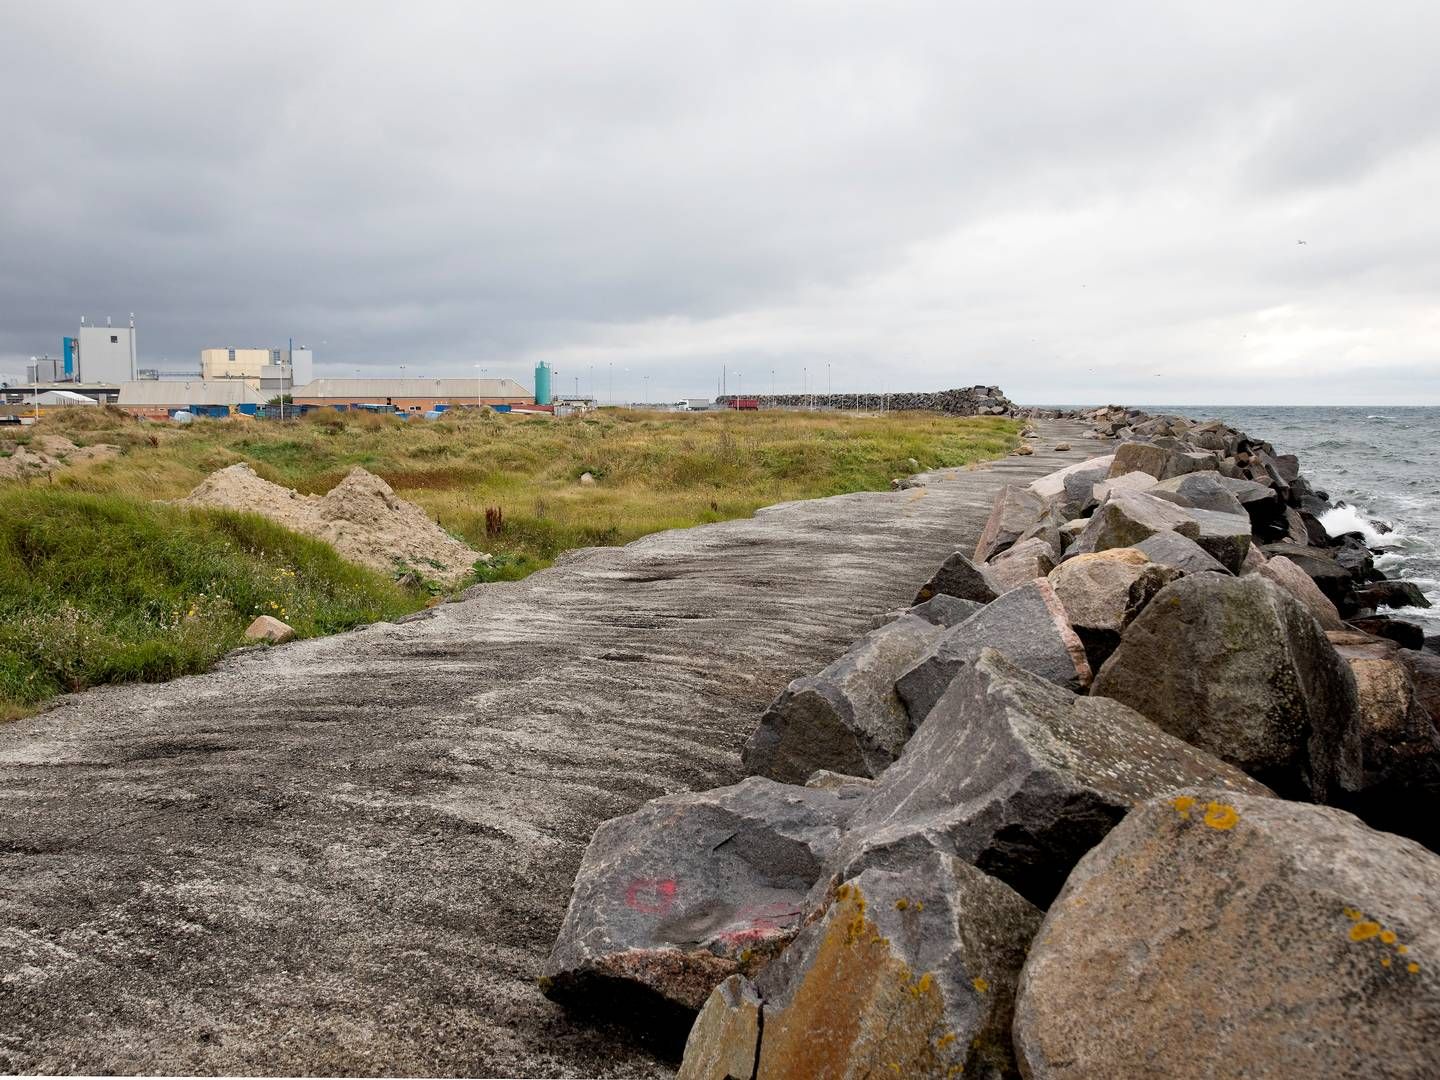 Borgerfællesskabet bag udviklingen af en 100 MW stor havvindpark ud for Nexø håber på, at forundersøgelser kan sættes i gang i løbet af sommeren. | Foto: Finn Frandsen